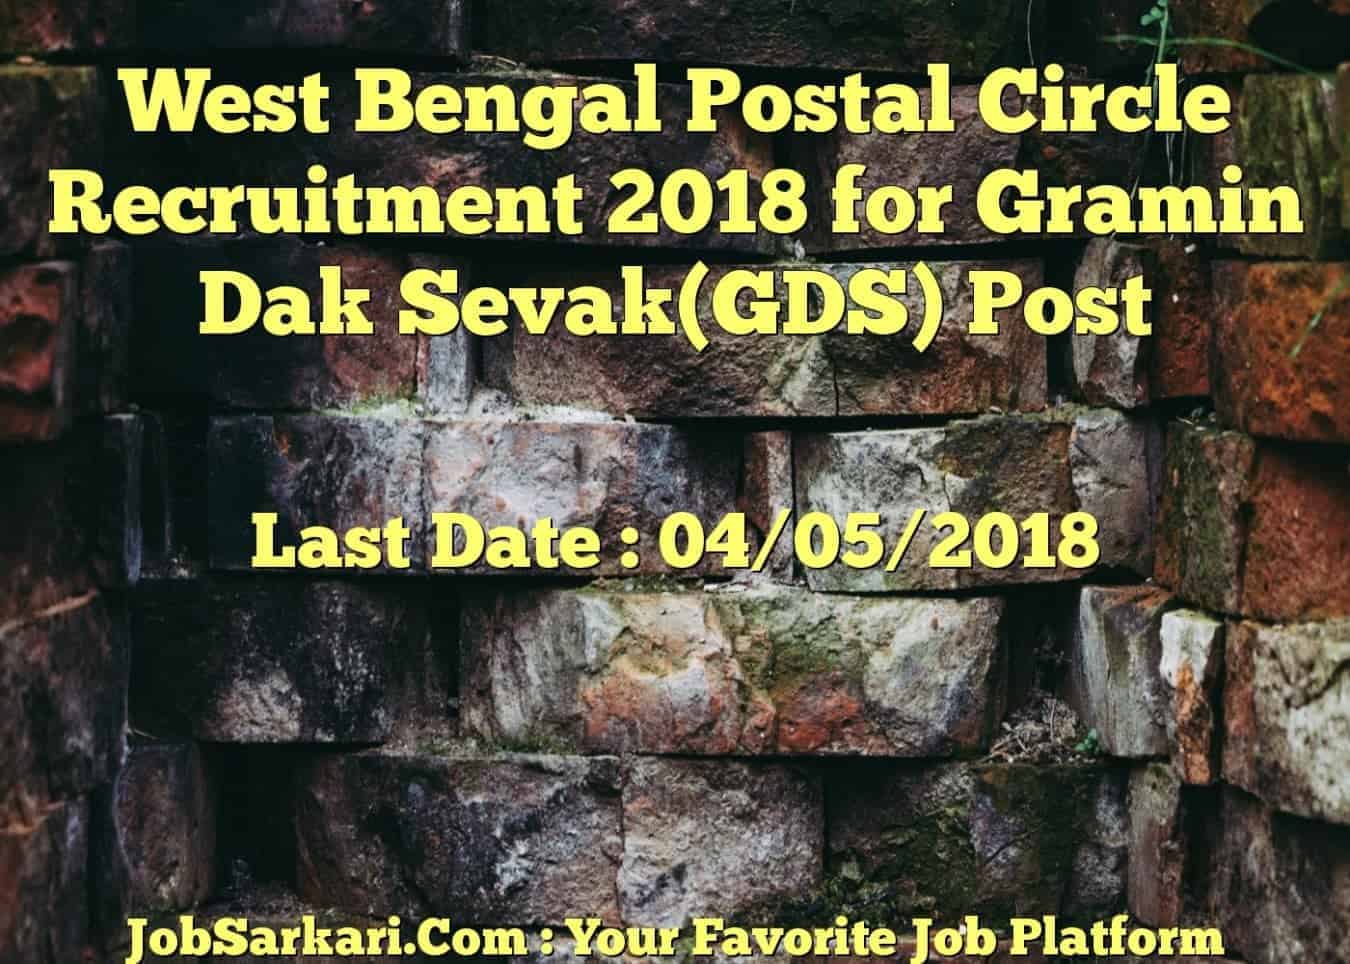 West Bengal Postal Circle Recruitment 2018 for Gramin Dak Sevak (GDS) Post